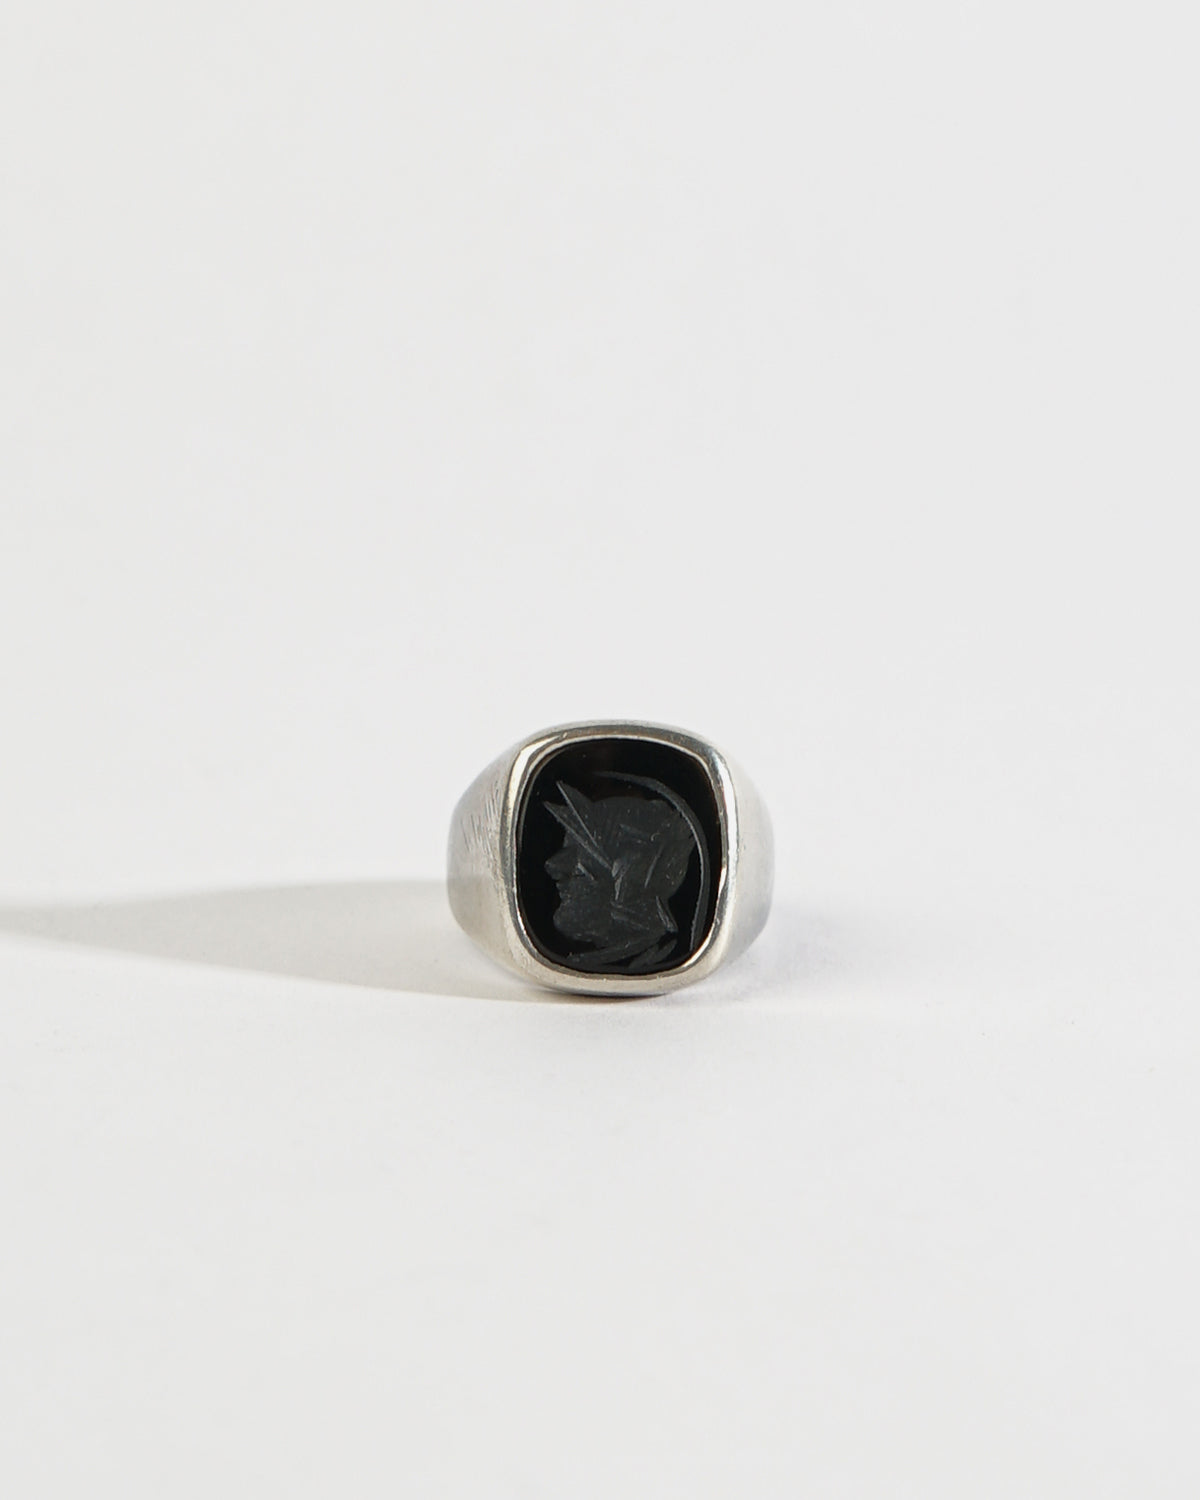 Silver Intaglio Ring / size: 10.5